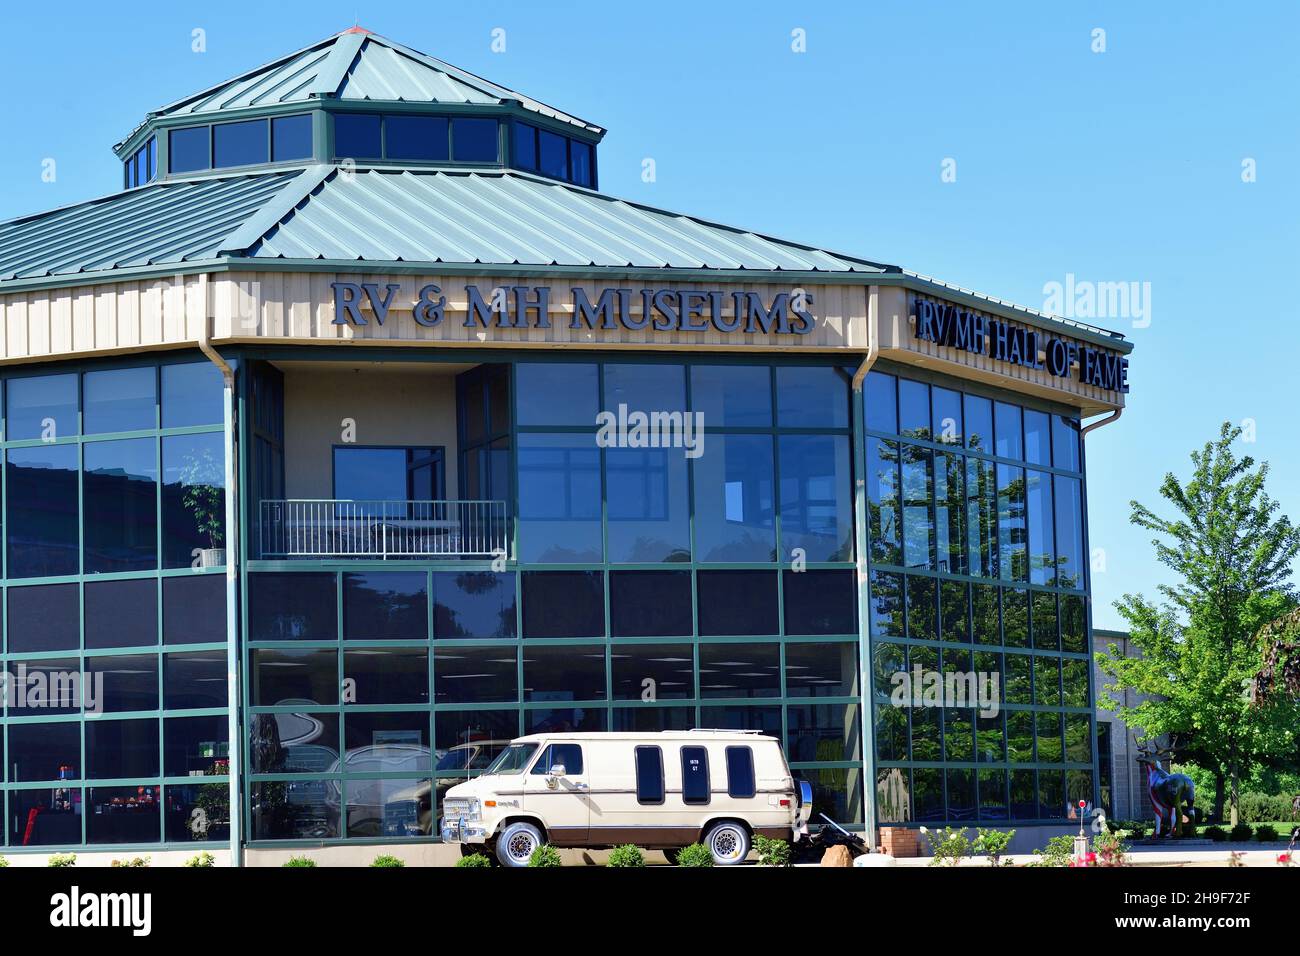 Elkhart, Indiana, USA. Die RV/MH Hall of Fame ist ein großes Museum in Elkhart, Indiana, das einer Vielzahl historischer Freizeitfahrzeuge gewidmet ist. Die mu Stockfoto